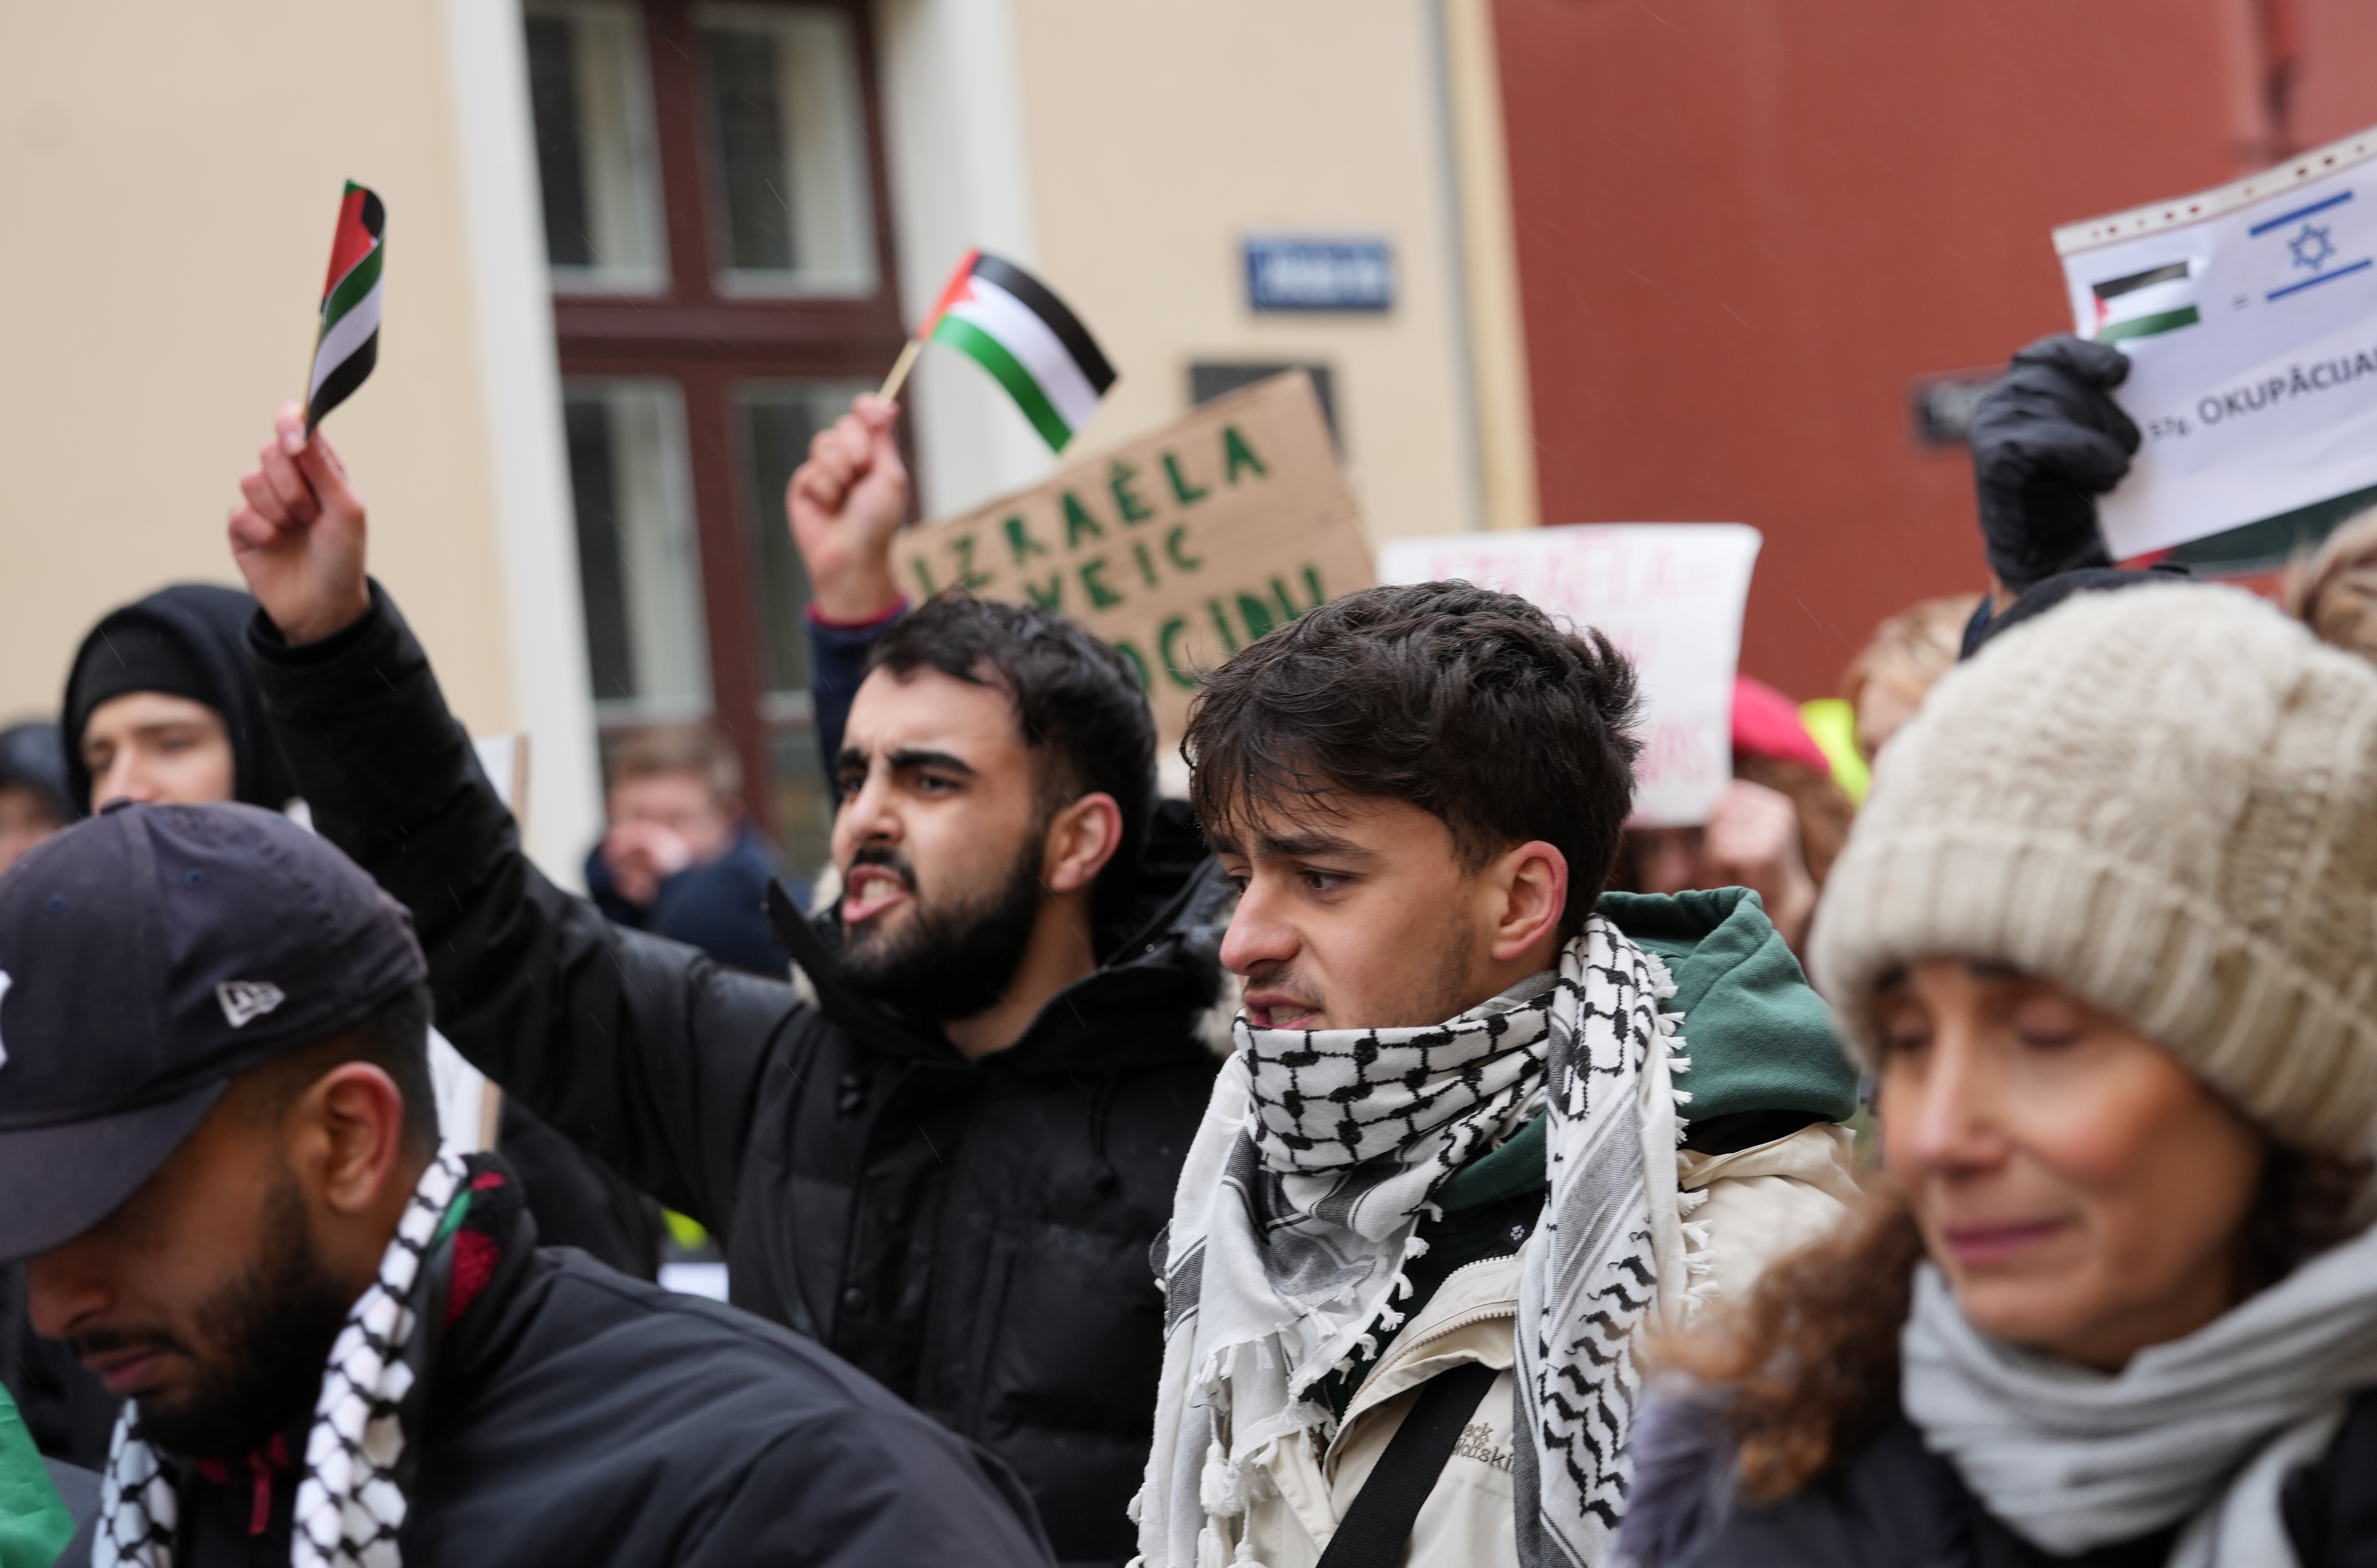 Rīgā aktīvistu grupa dodas gājienā, lai paustu atbalstu Palestīnai.